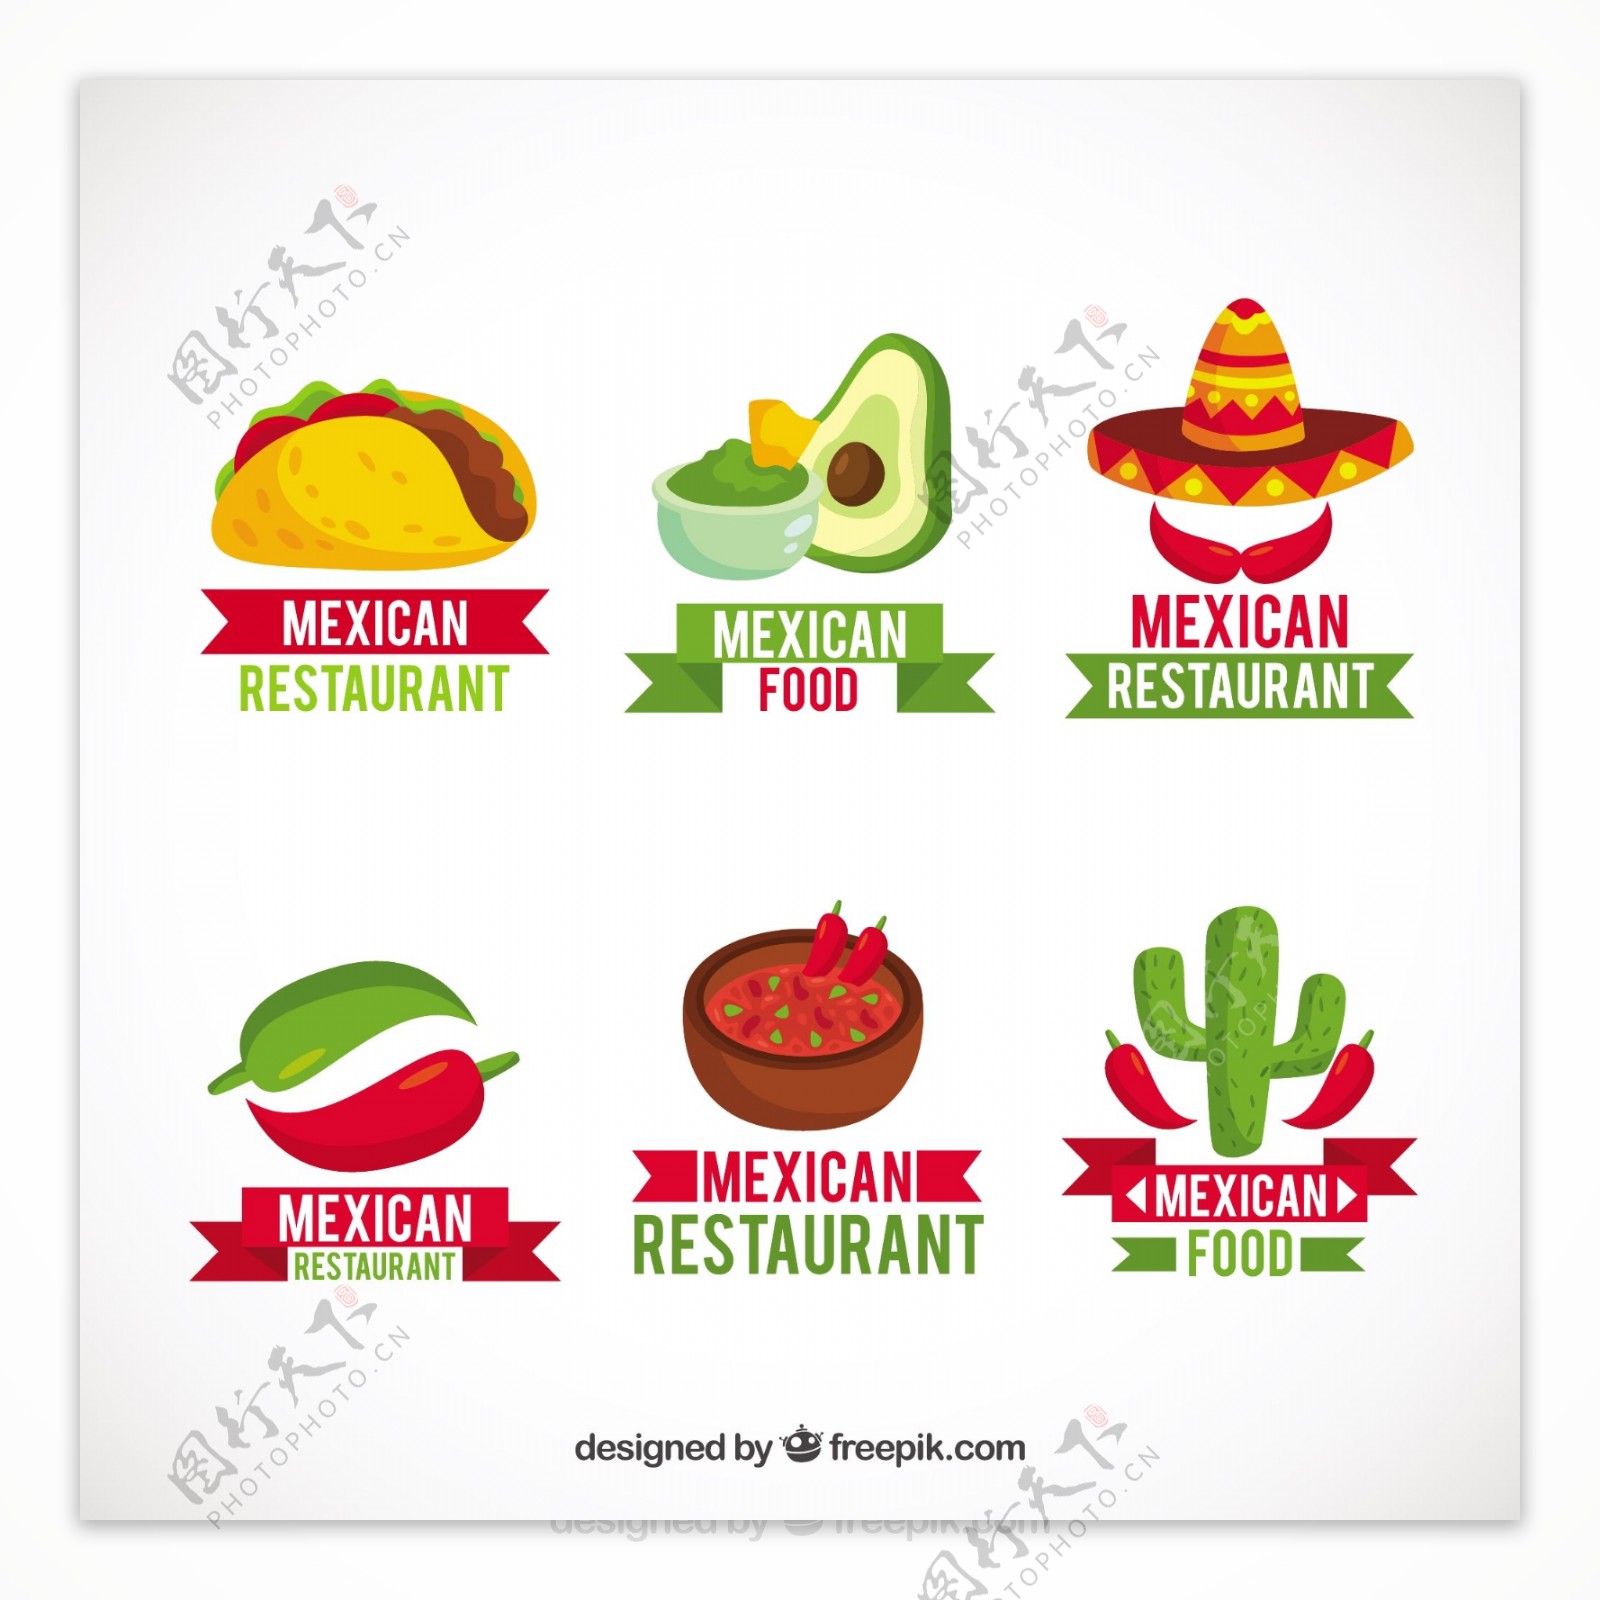 墨西哥食品包装与标志